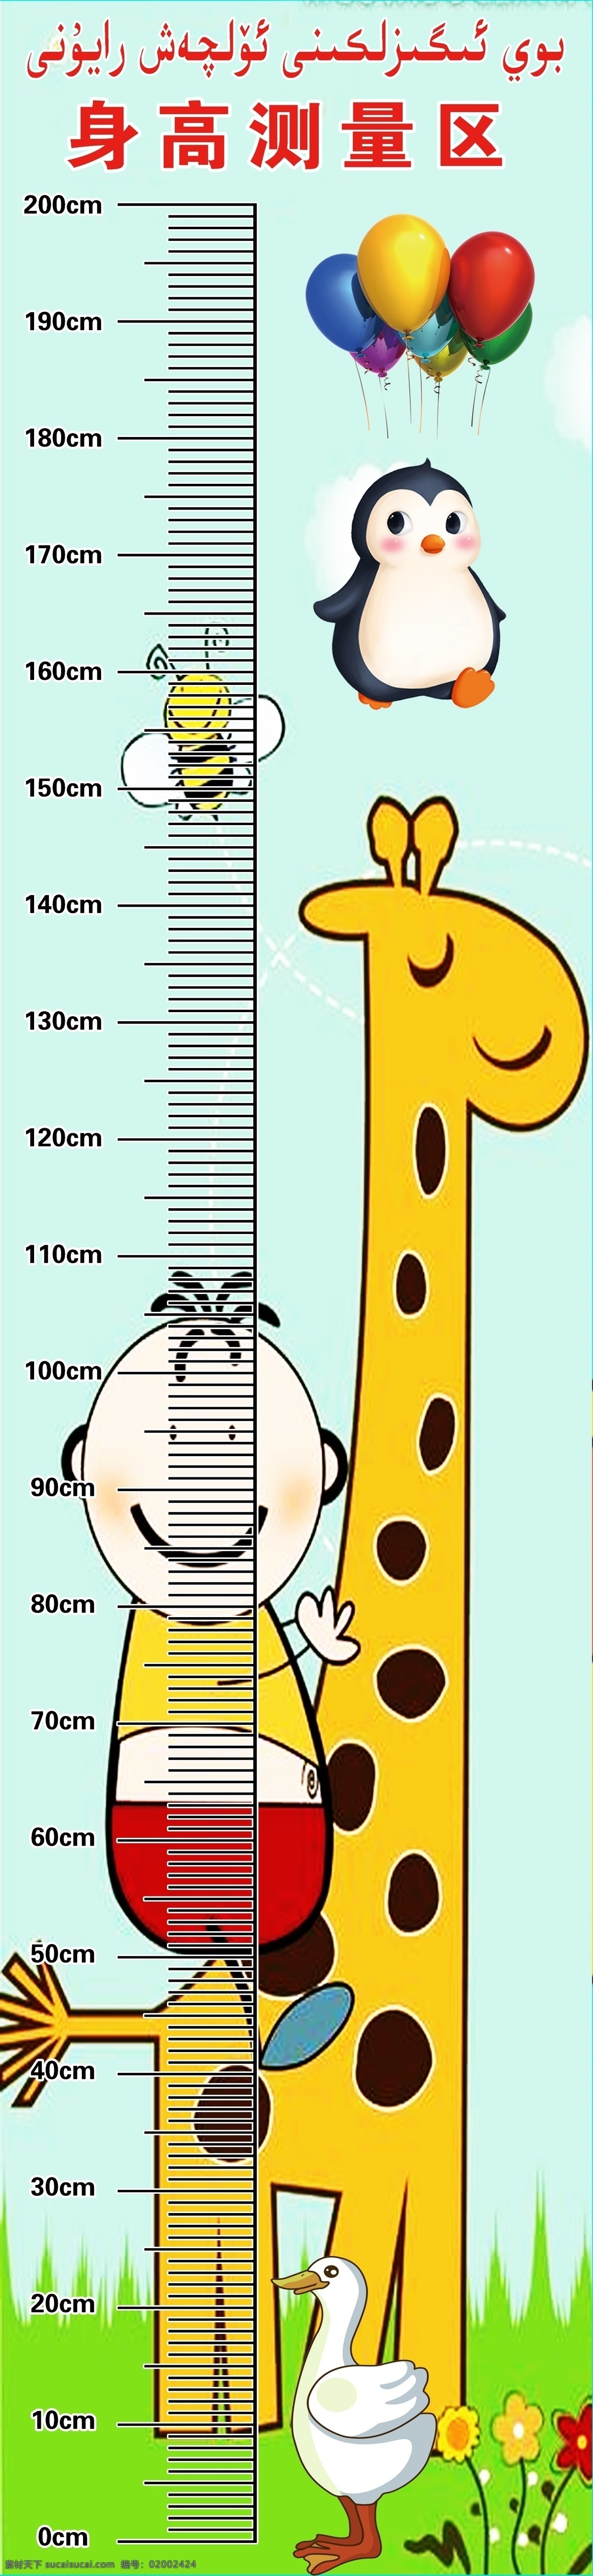 身高表 身高测量 测量身高 身高测量区 身高测量表 分层